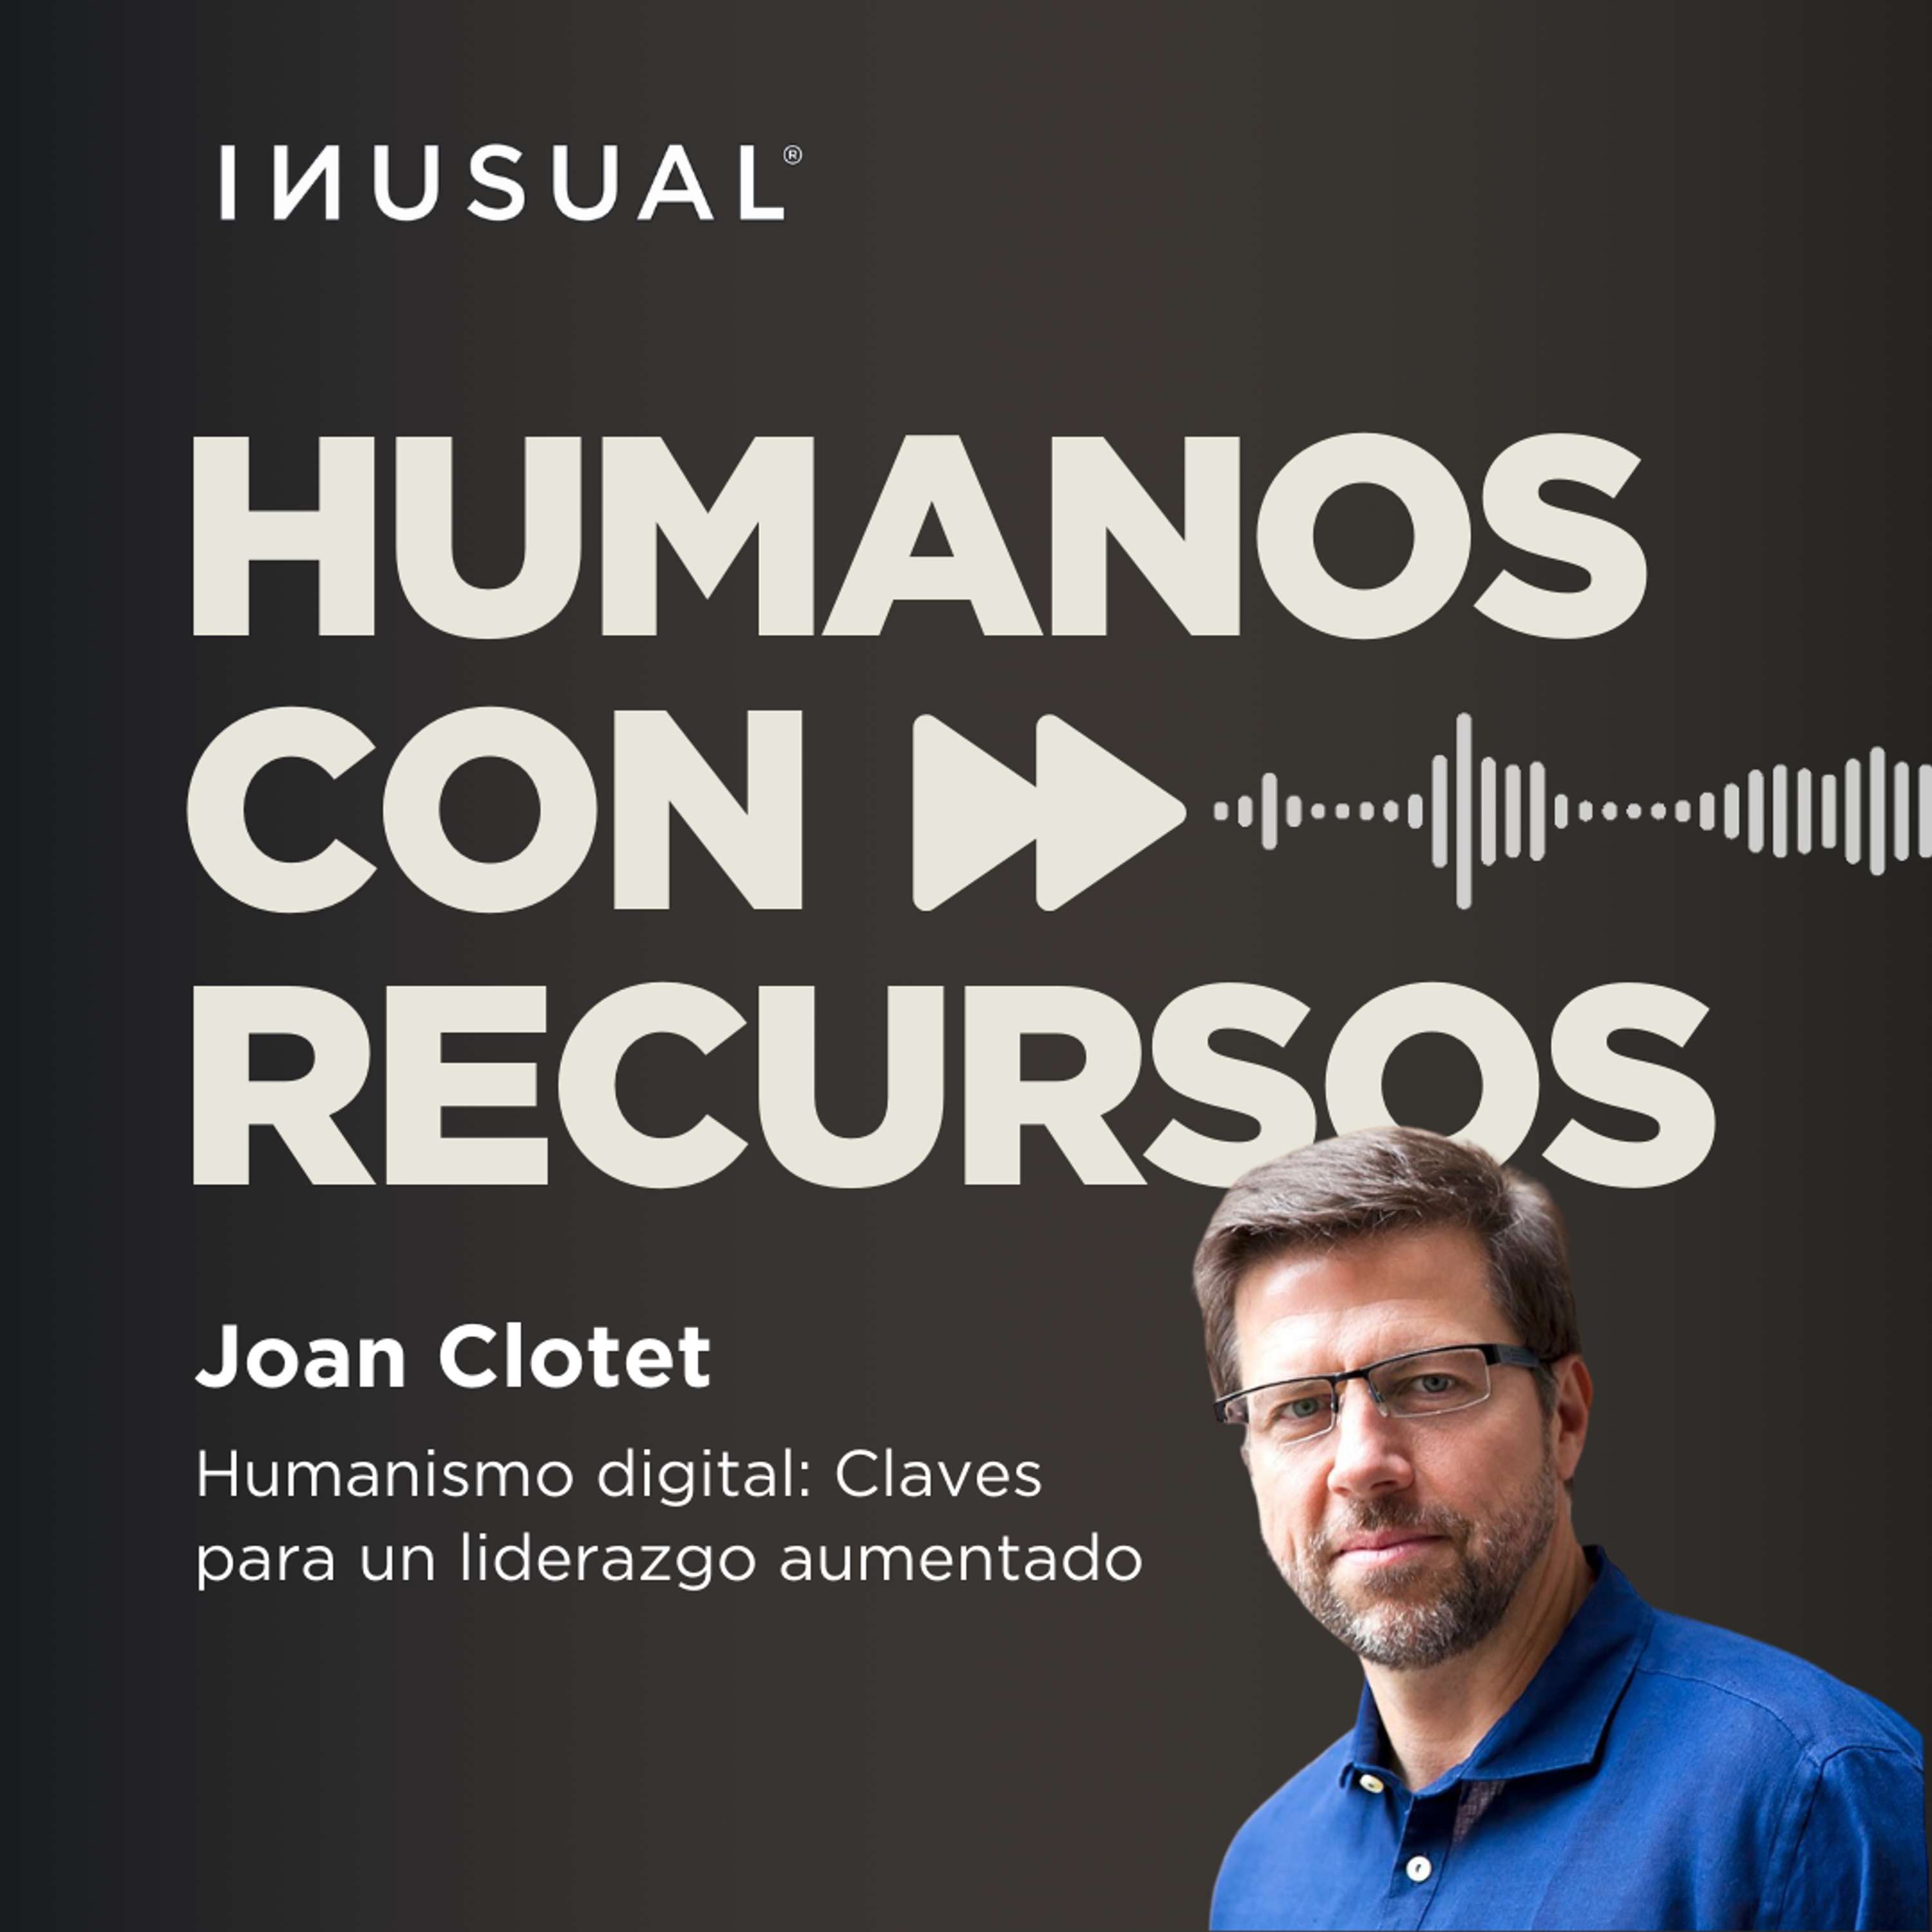 Humanismo digital: Claves para un liderazgo aumentado, con Joan Clotet